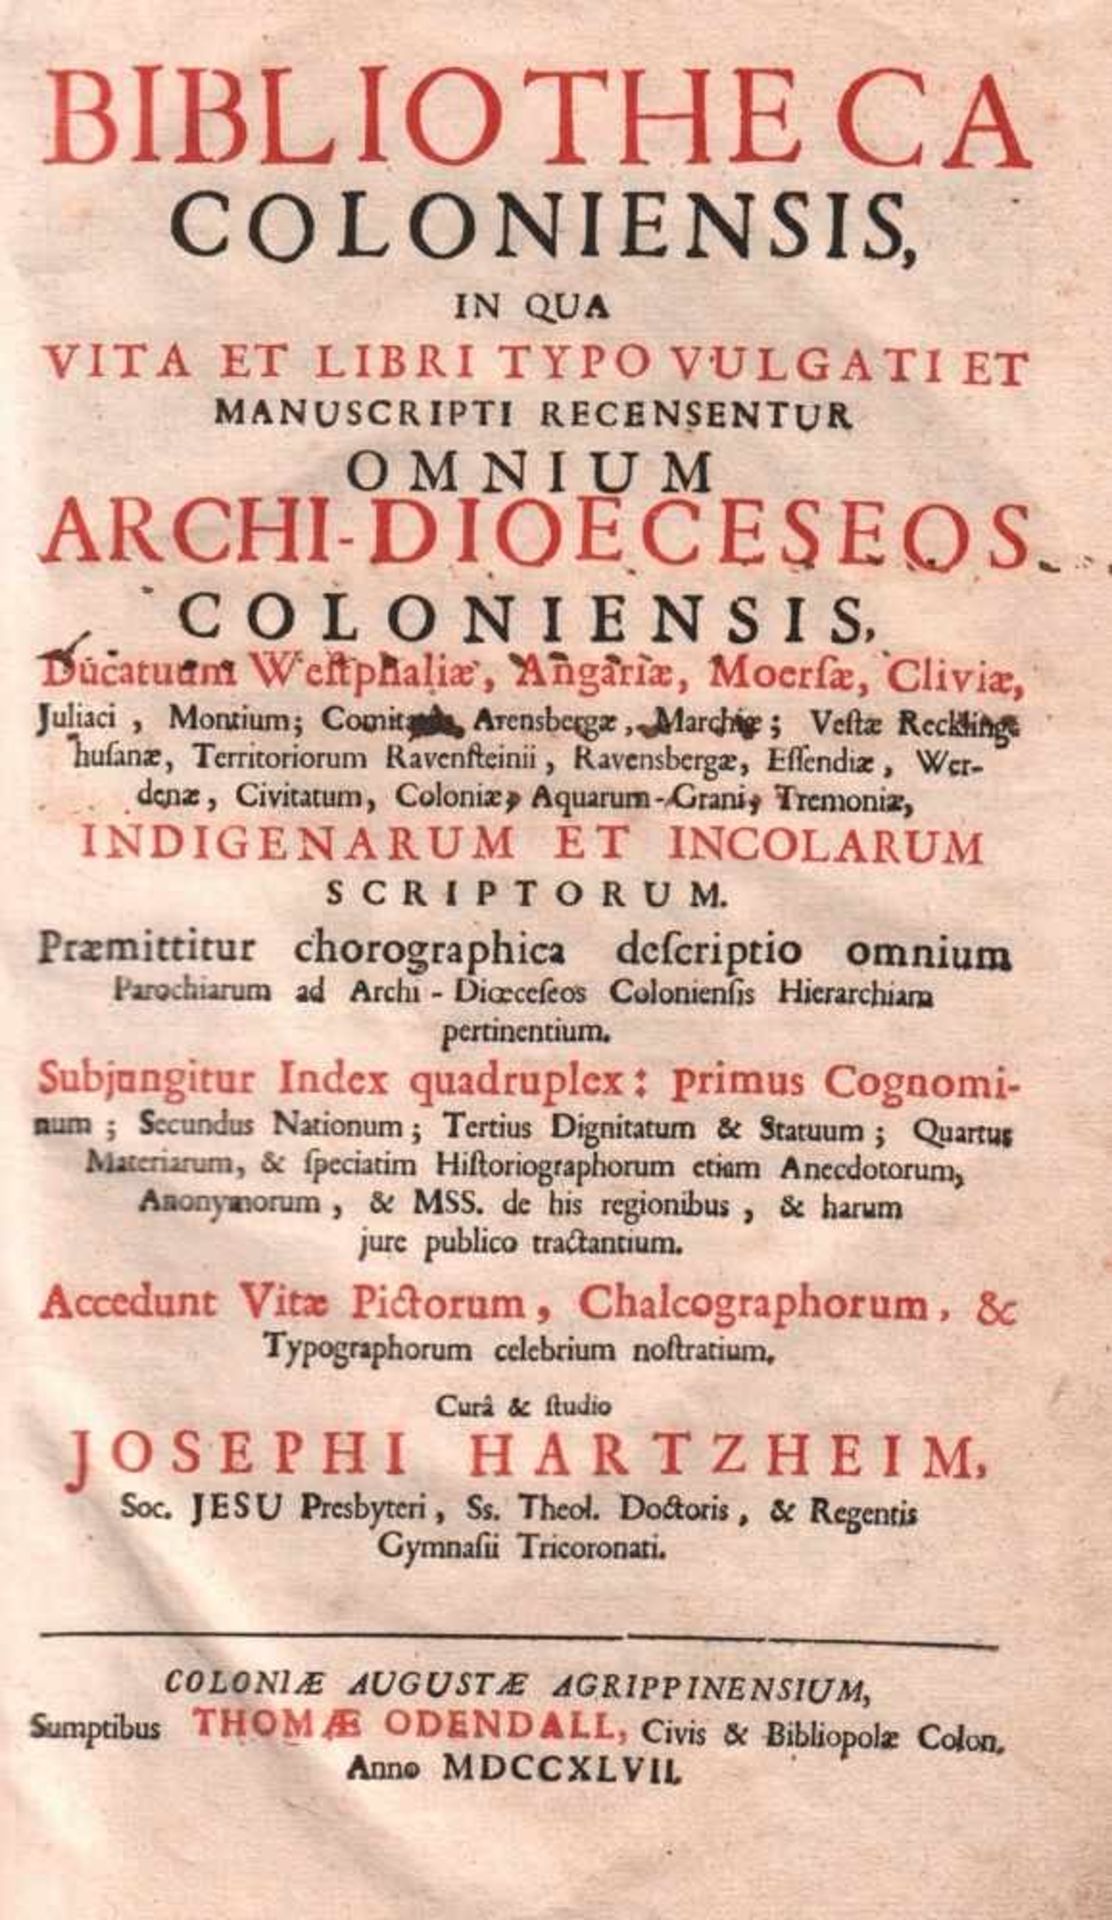 Hartzheim, Joseph.Bibliotheca Coloniensis, in qua vita et libri typo vulgati et manuscripti